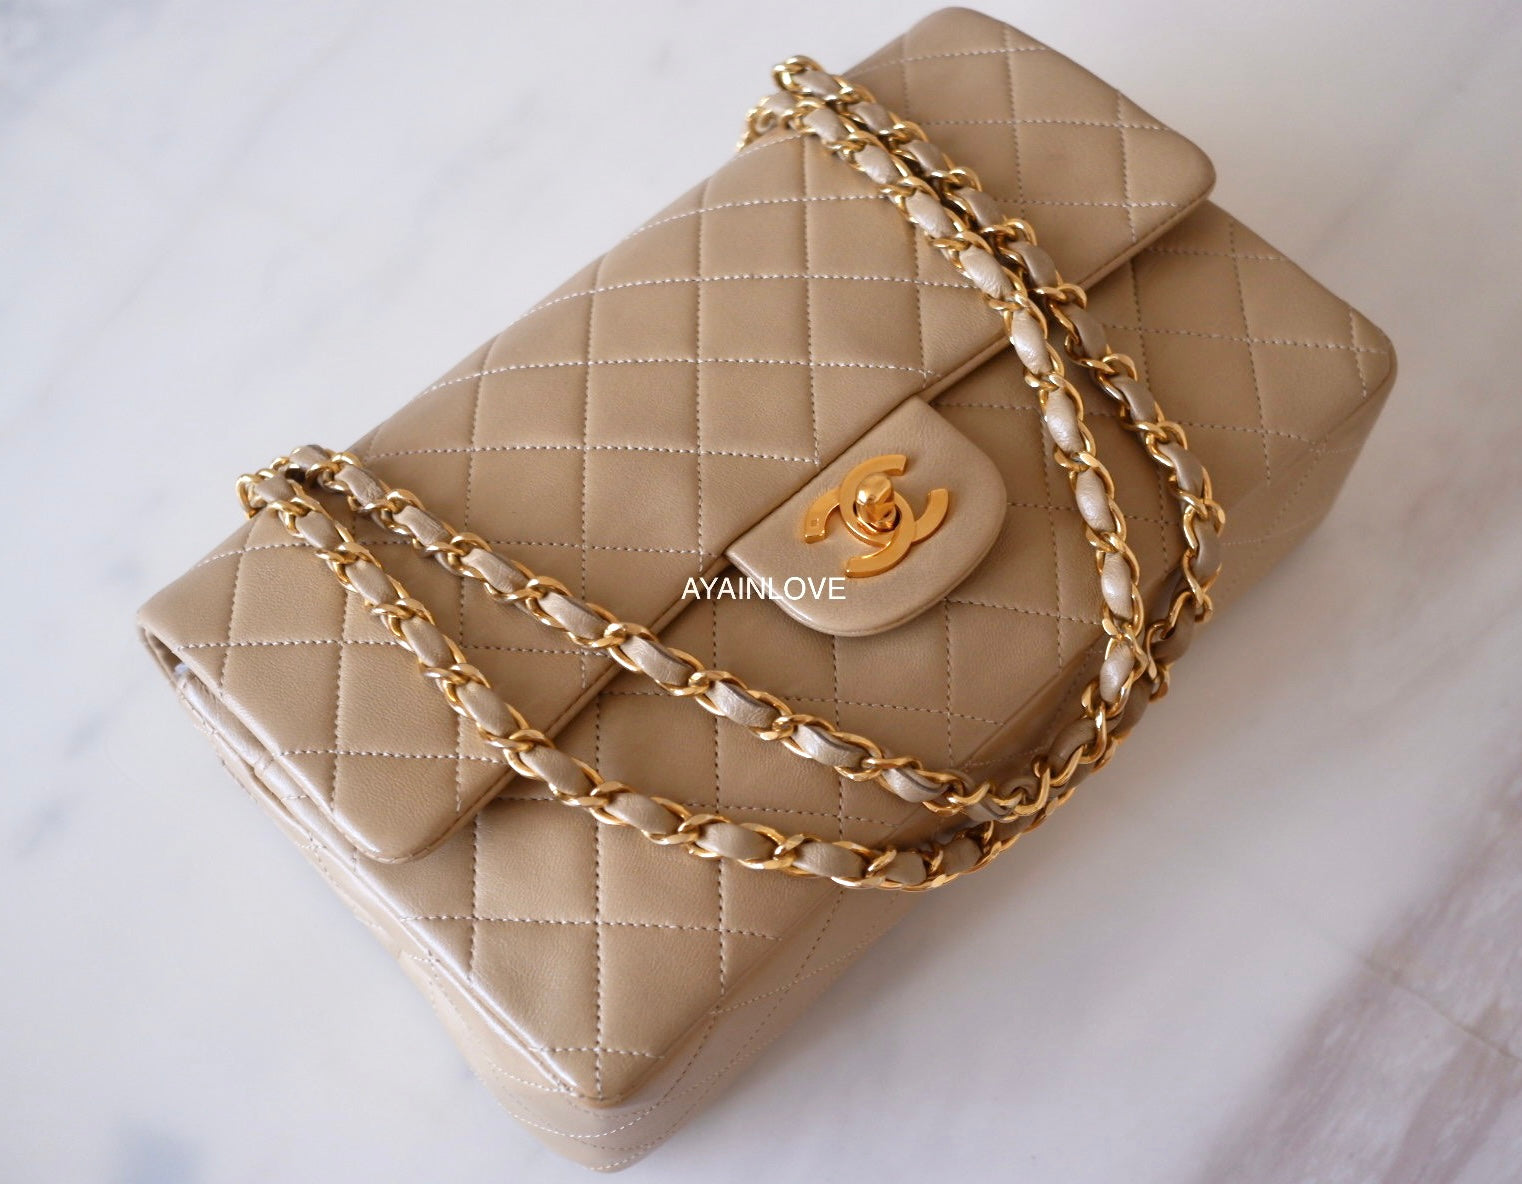 Chanel Golden Class Flap Bag